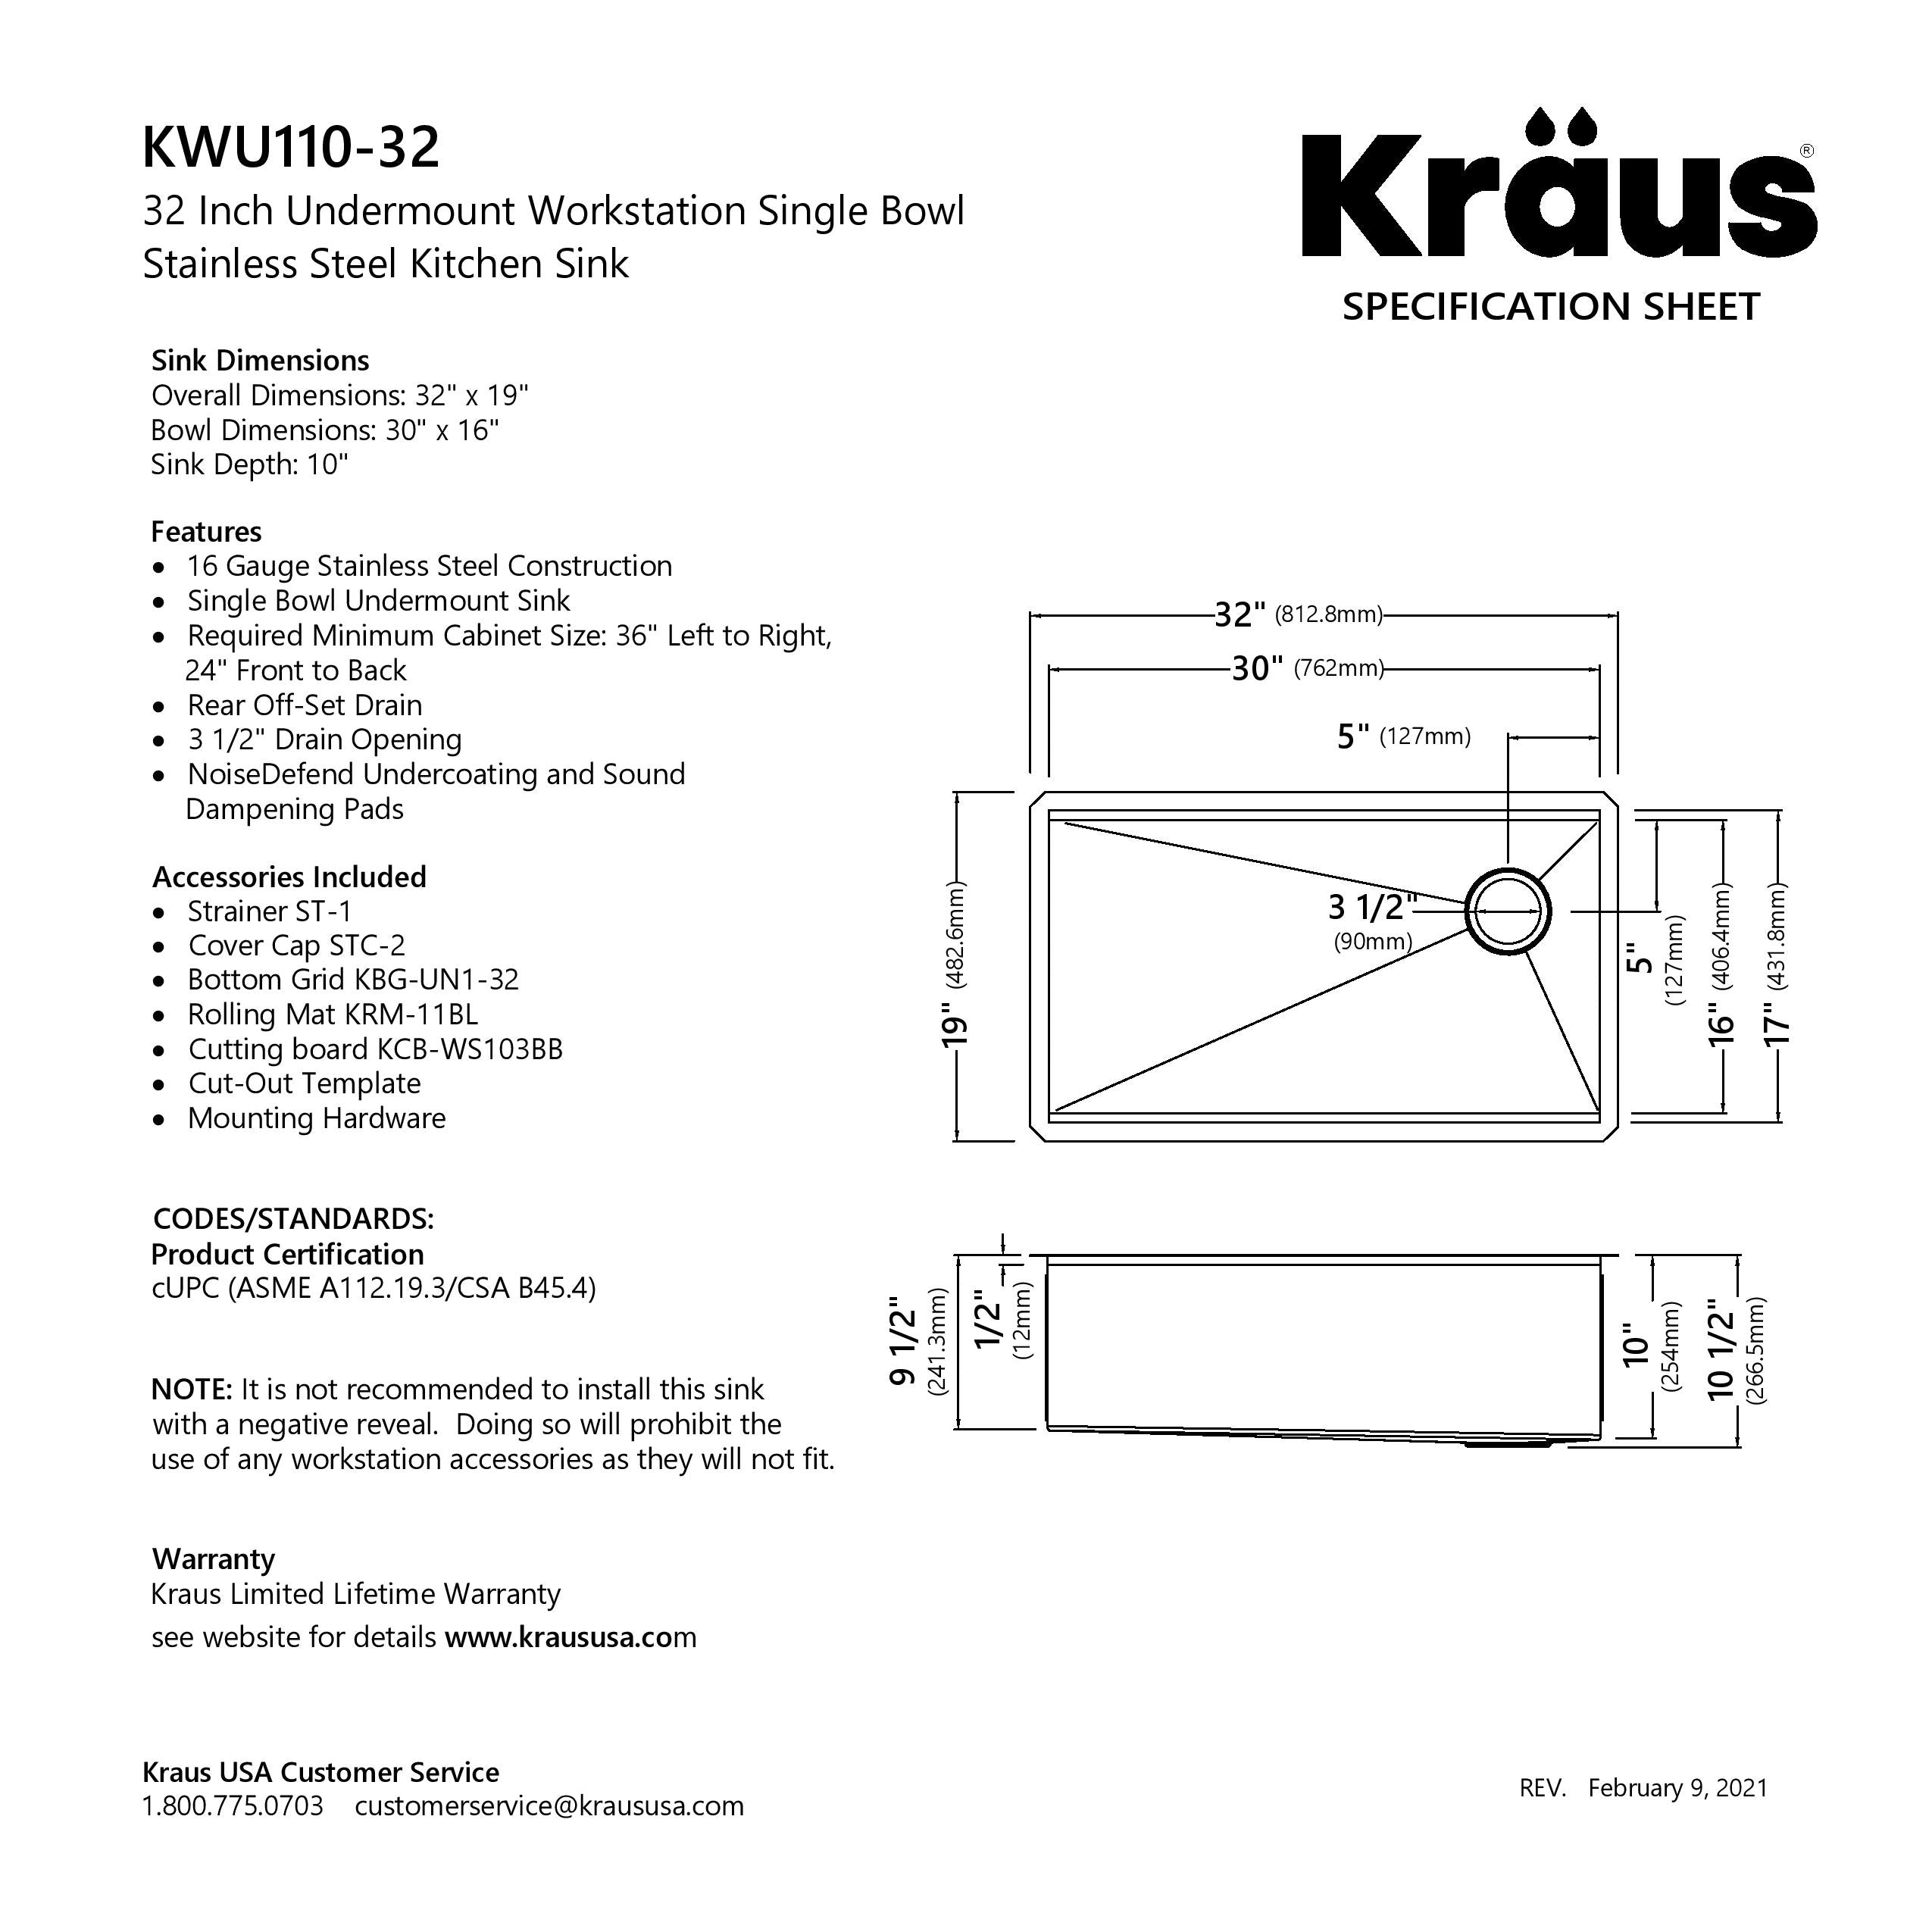 KRAUS Kore Workstation 32 Undermount 16 Gauge Kitchen Sink — DirectSinks